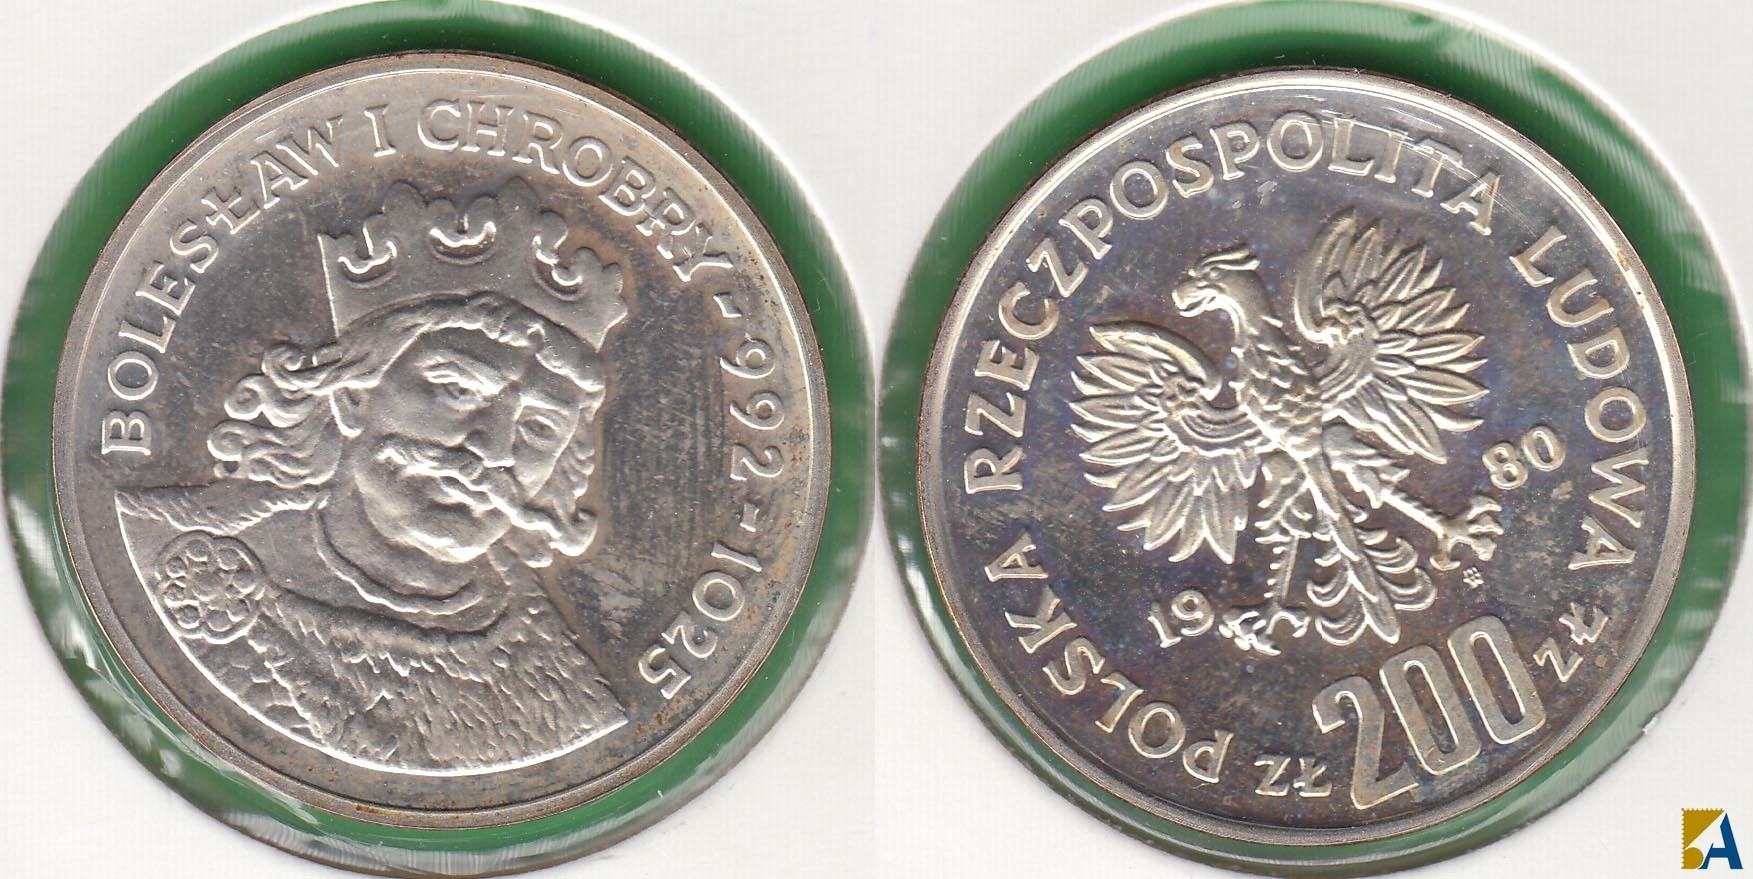 POLONIA - POLSKA. 200 ZLOTYCH DE 1980. PLATA 0.750. (3)